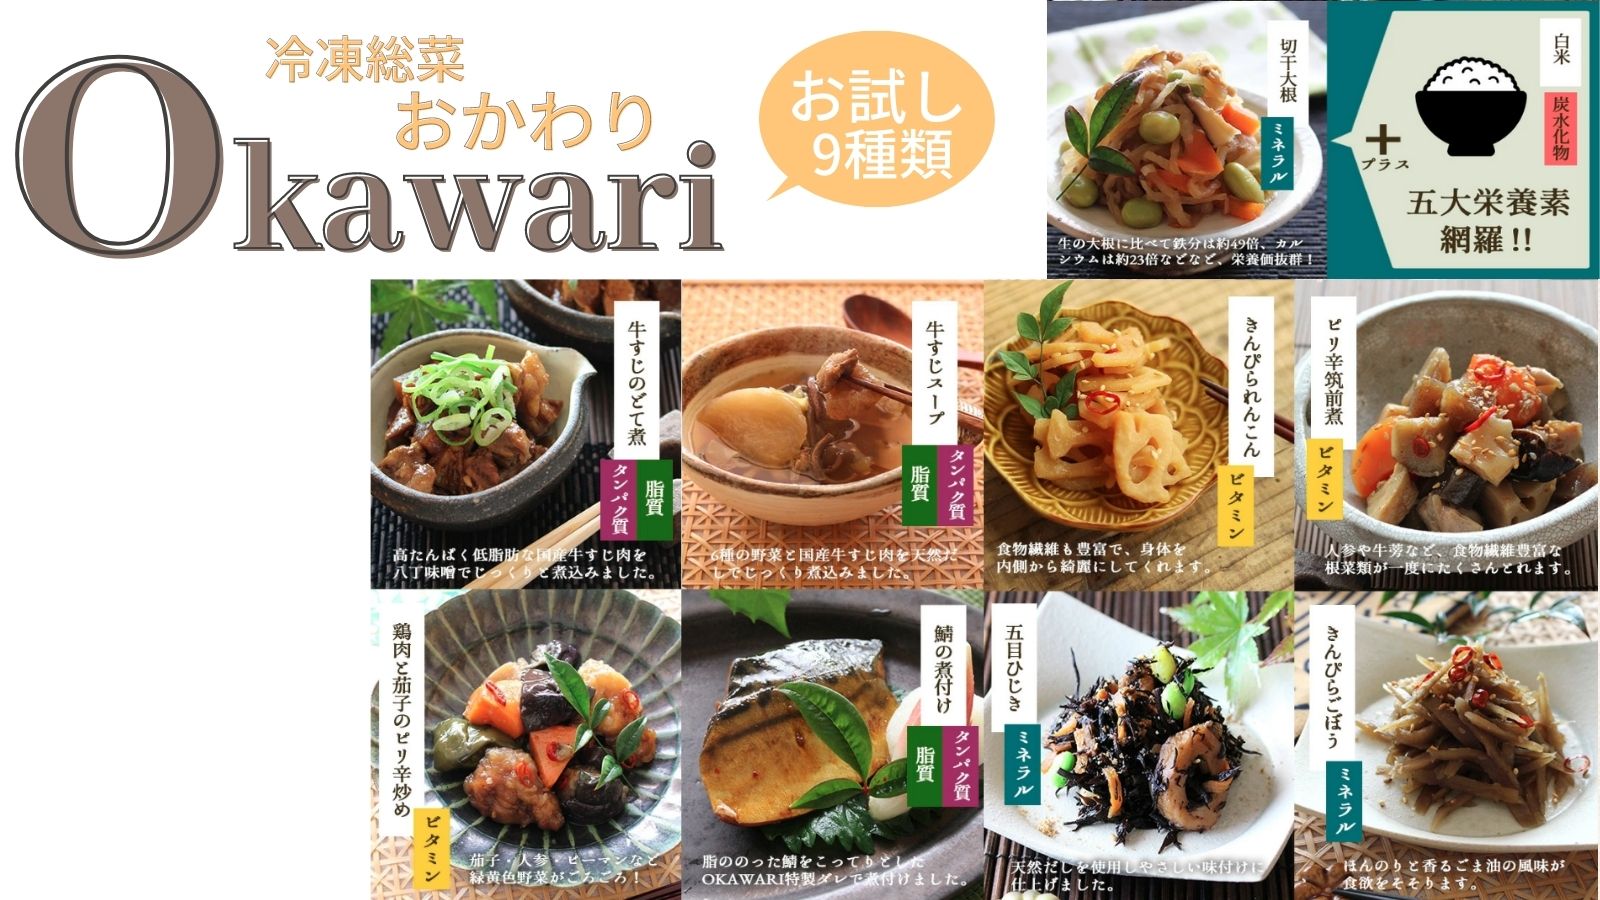 冷凍総菜Okawari【おかわり】お試し9種類